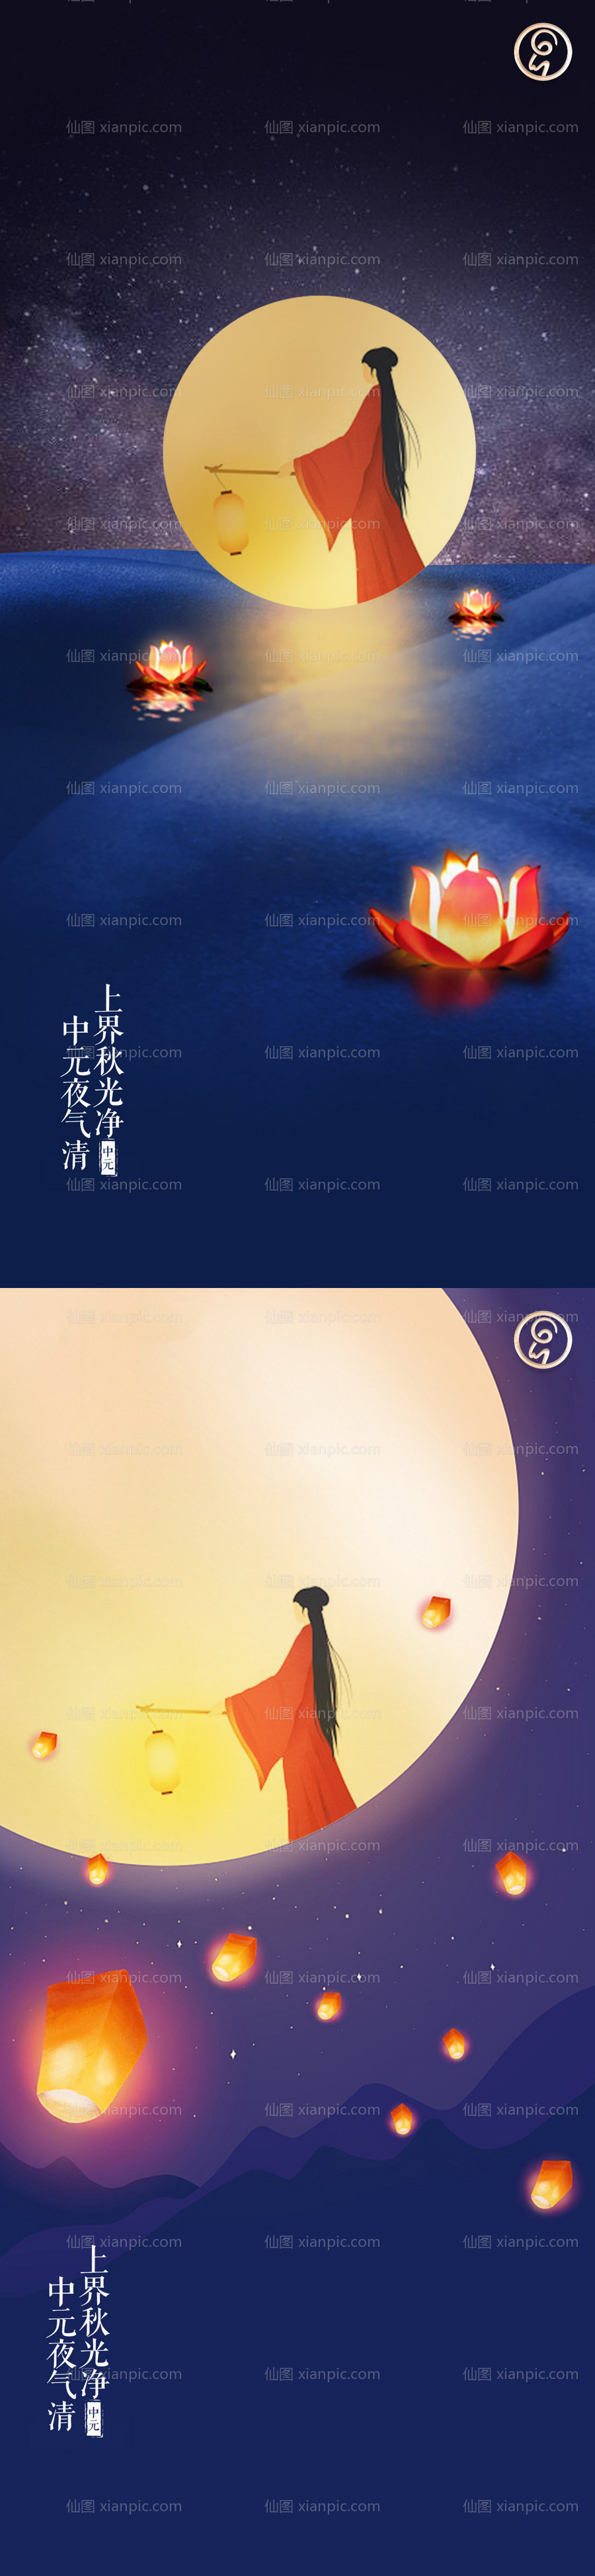 素材乐-中元节节日海报